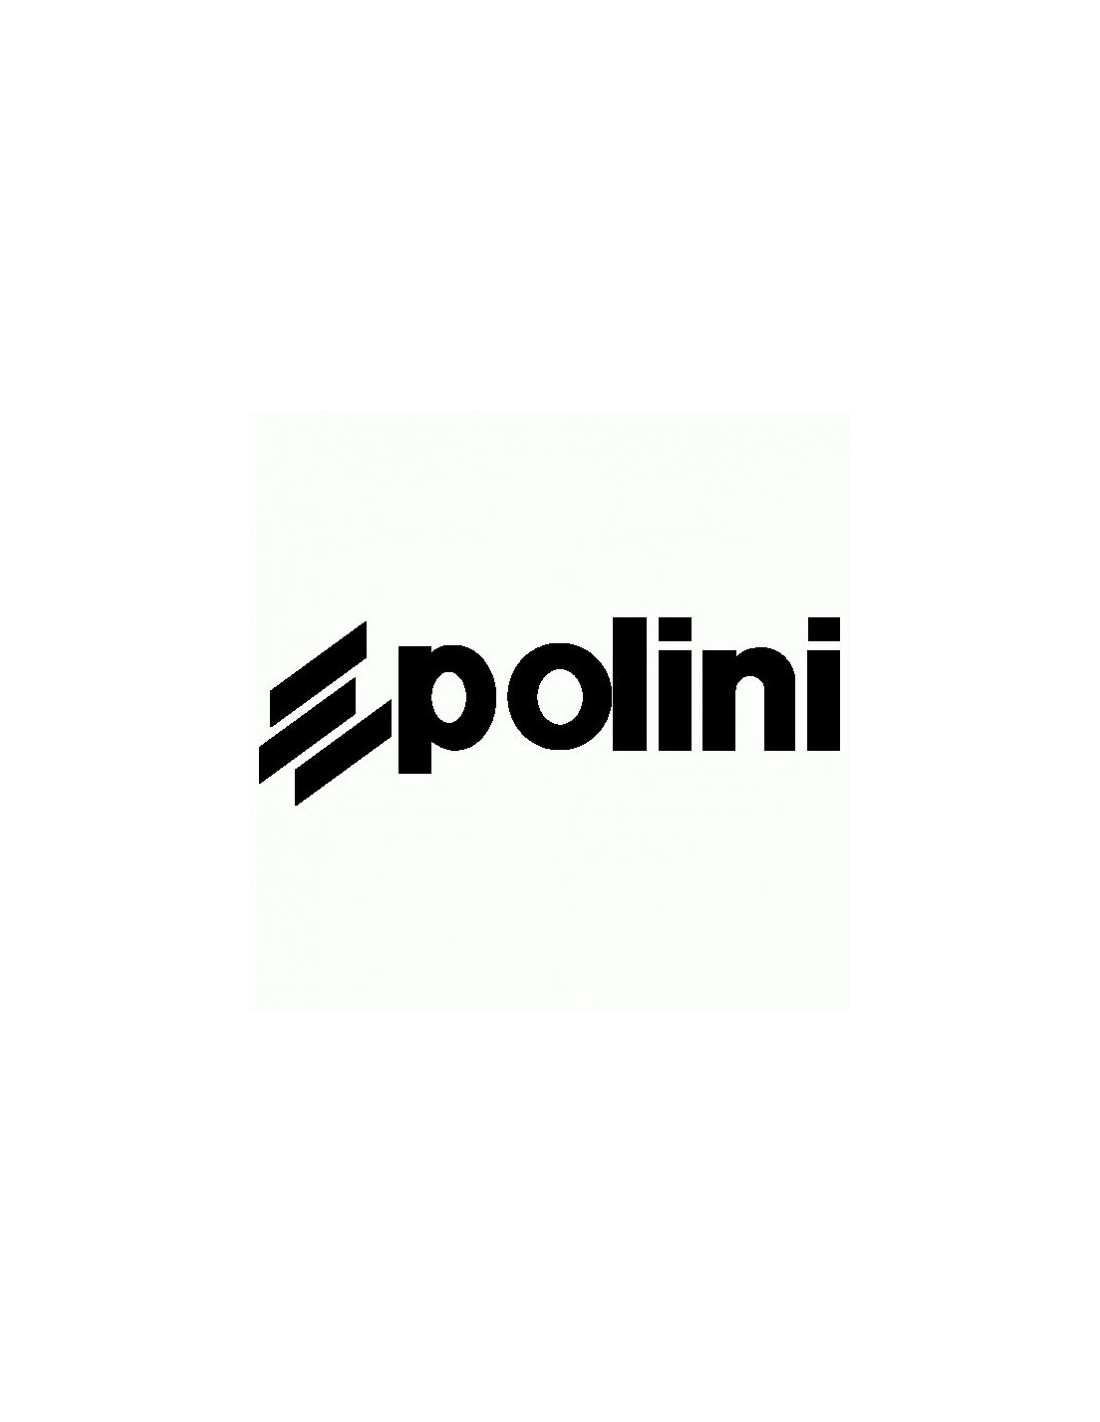 Polini - Adesivo Prespaziato - AdesiviStore